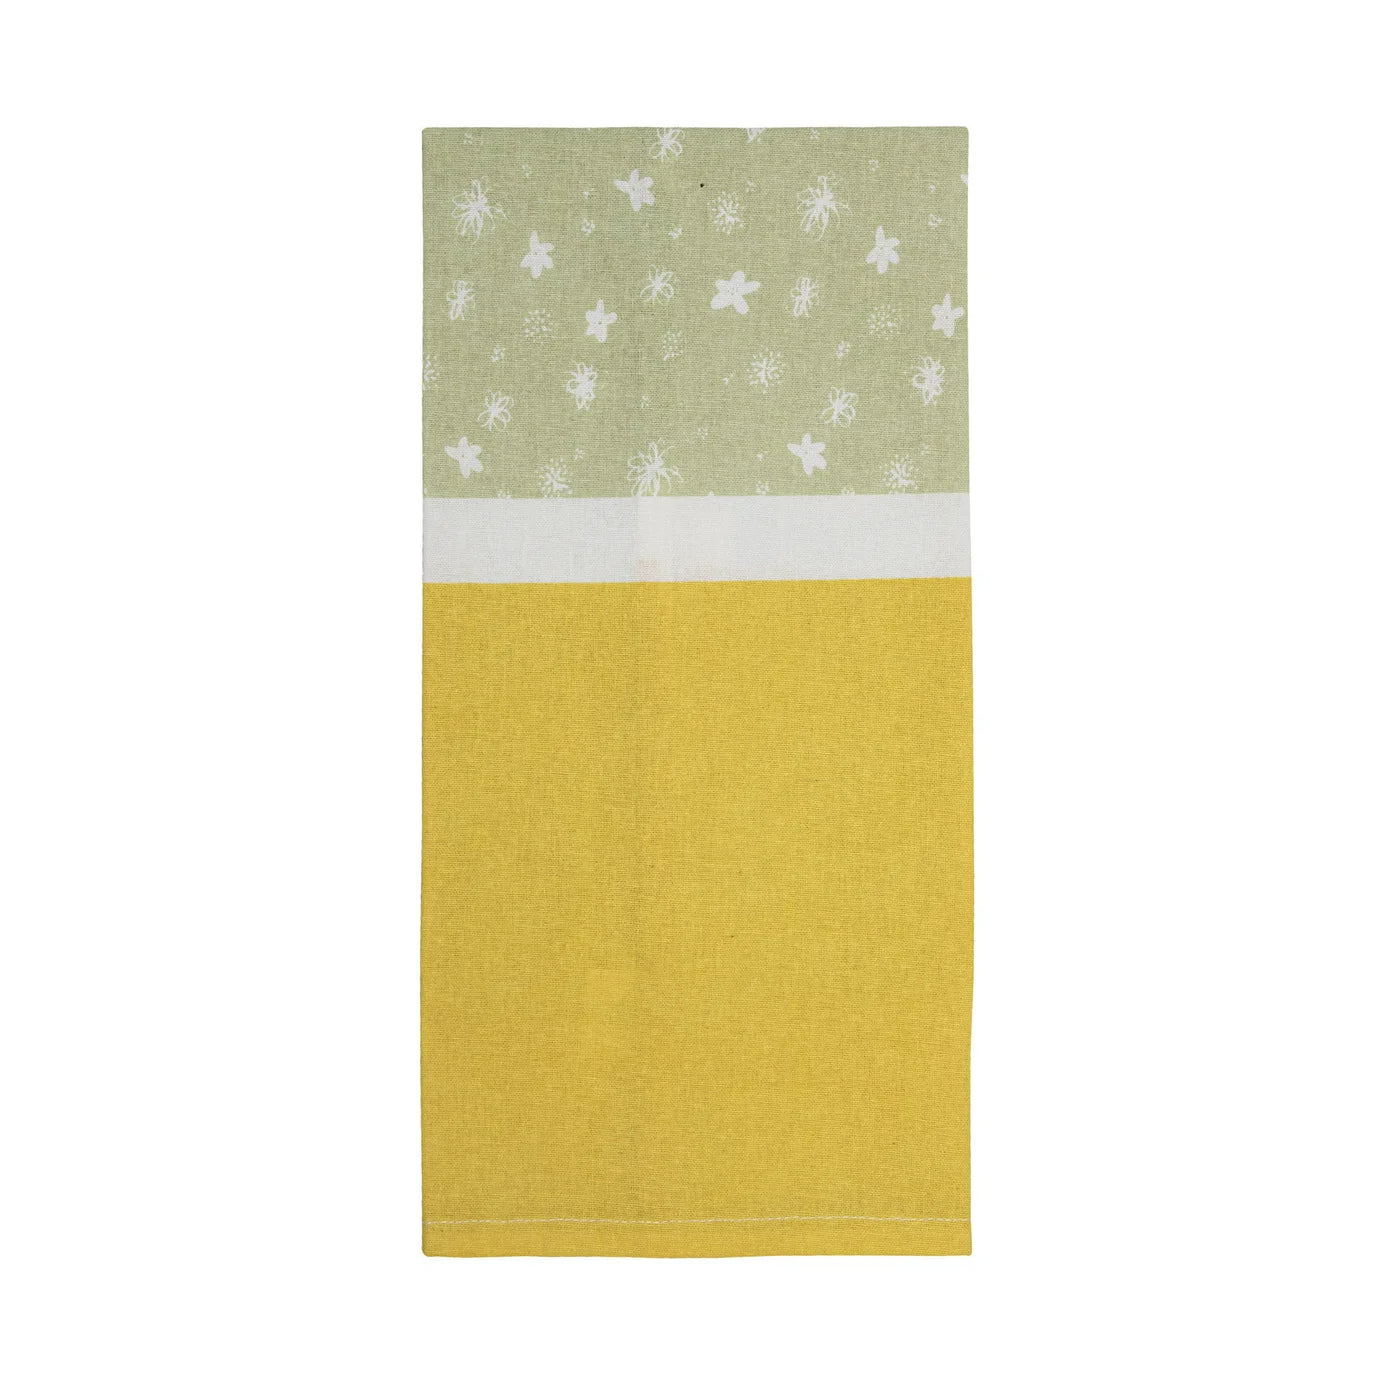 Cottage Floral Tea Towel Set of 4